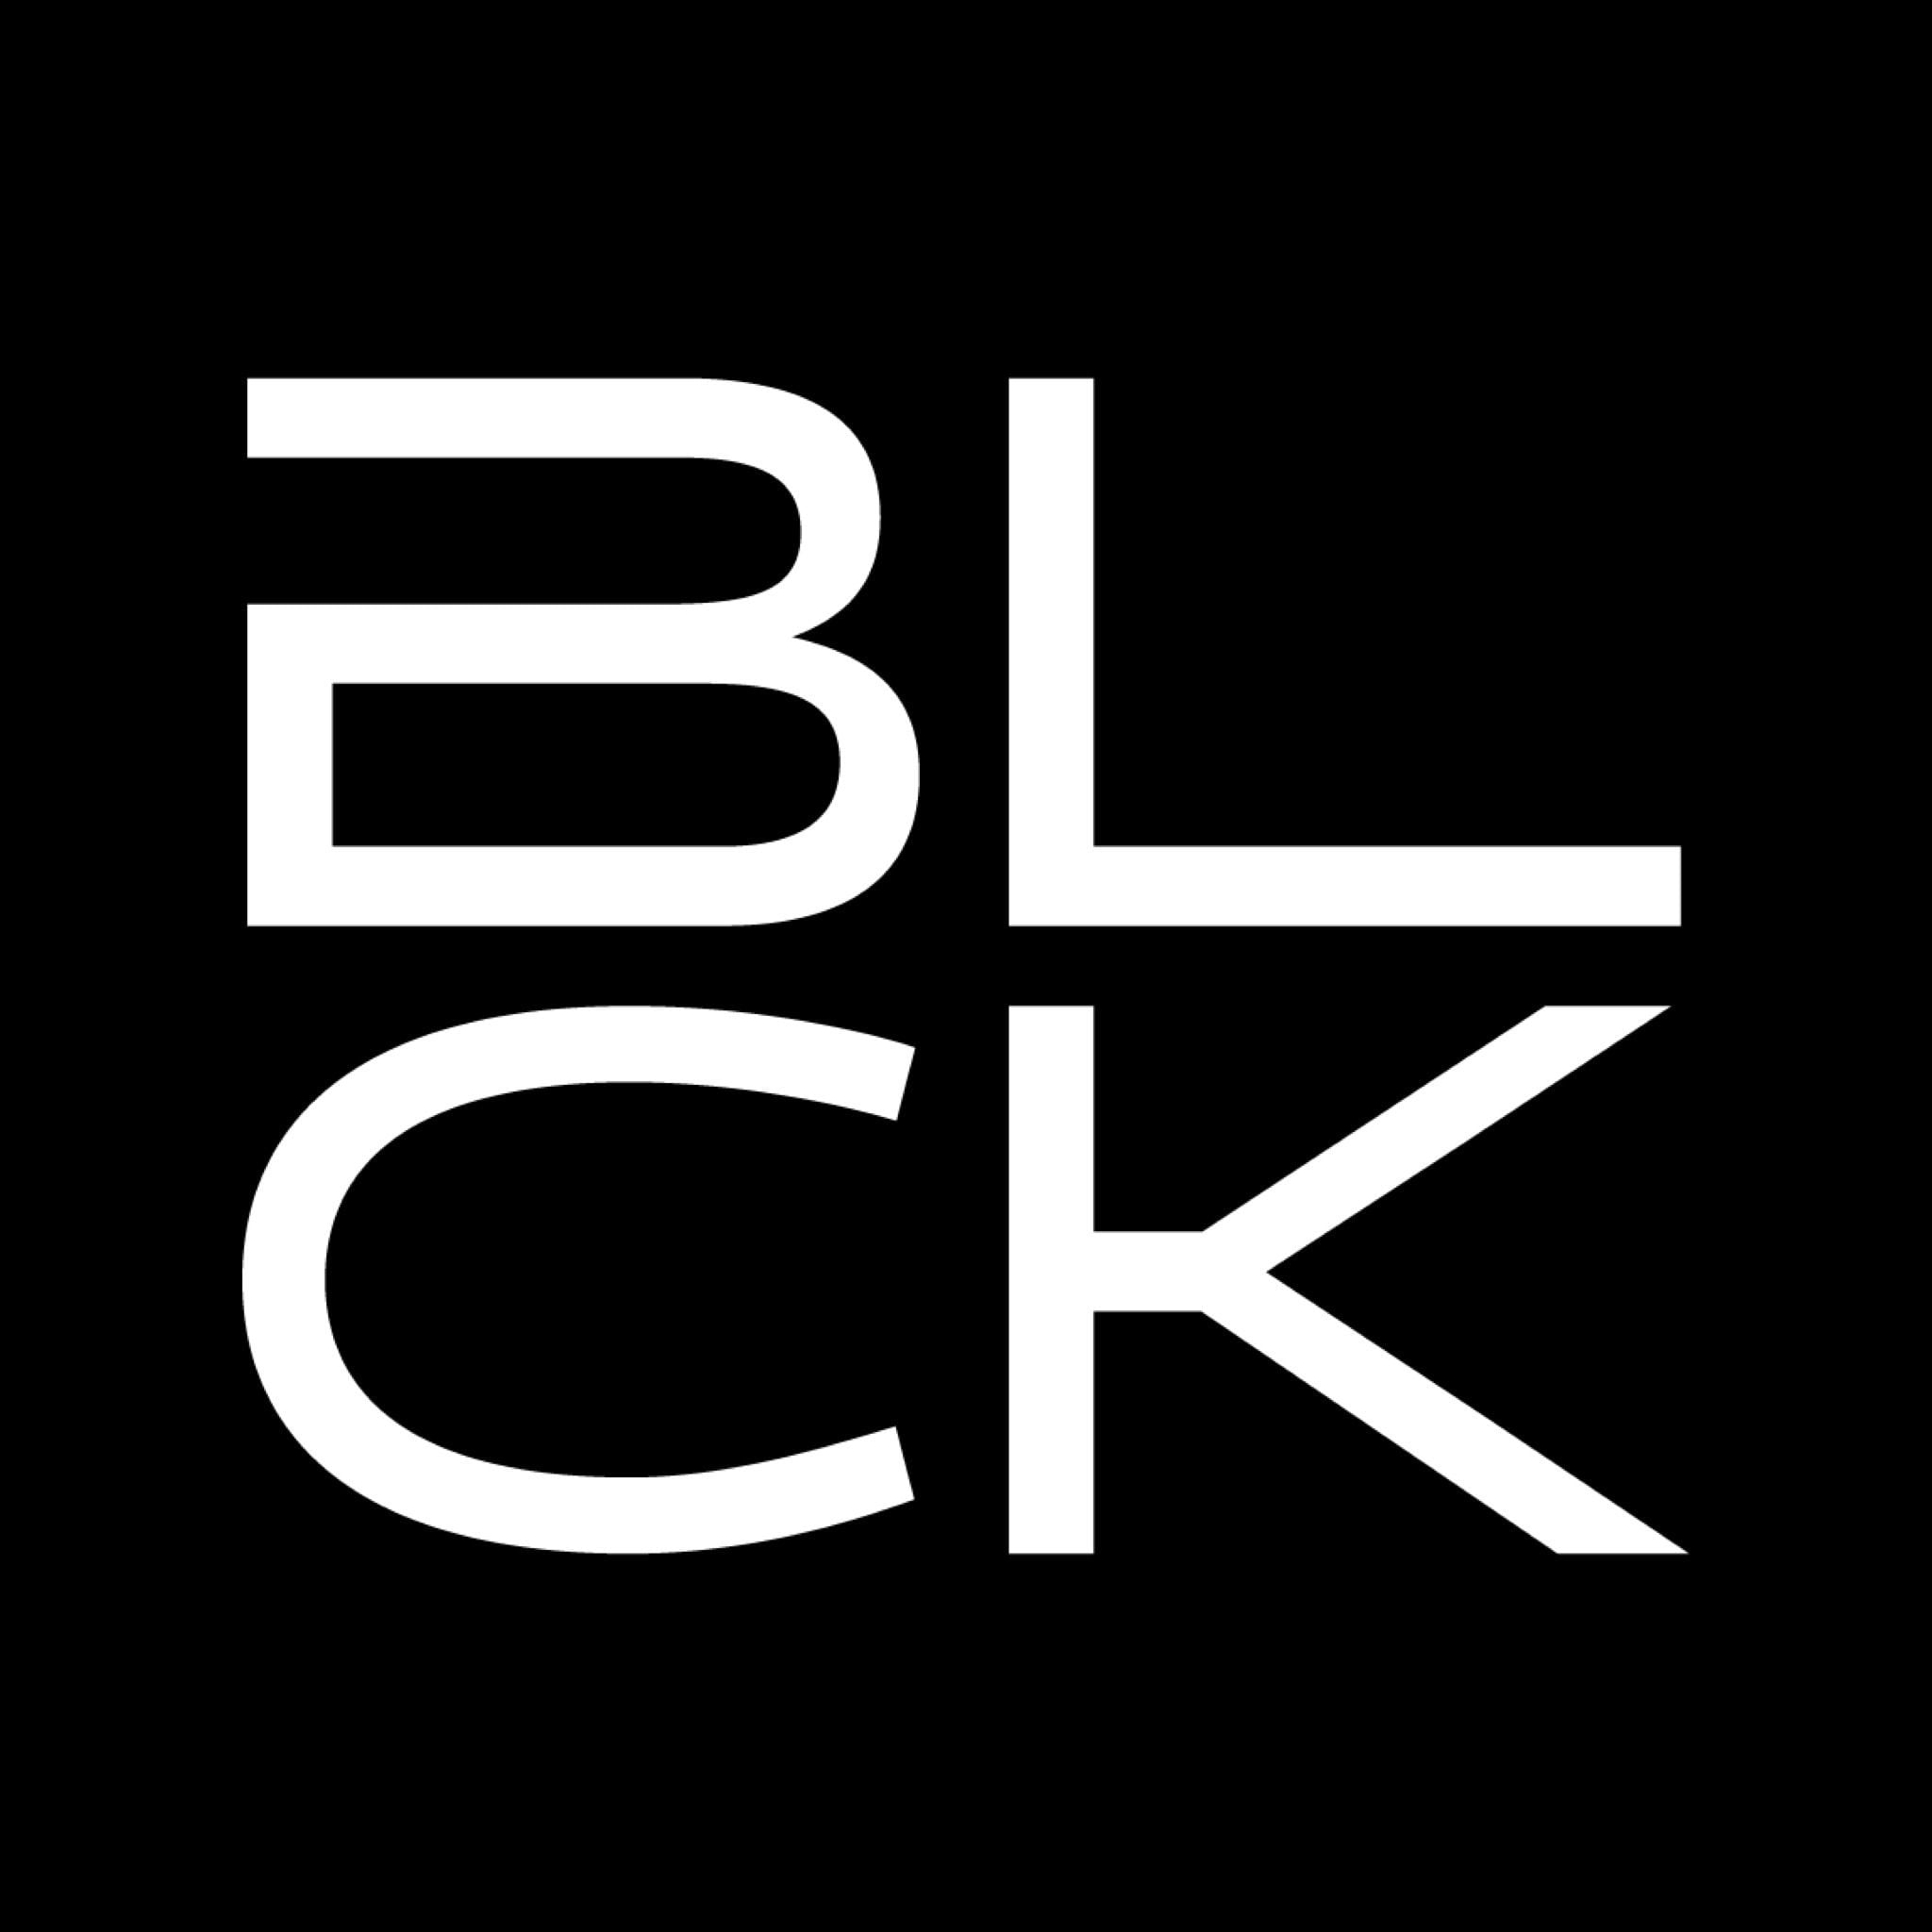 Vive la original y deliciosa experiencia Blck Café Bar